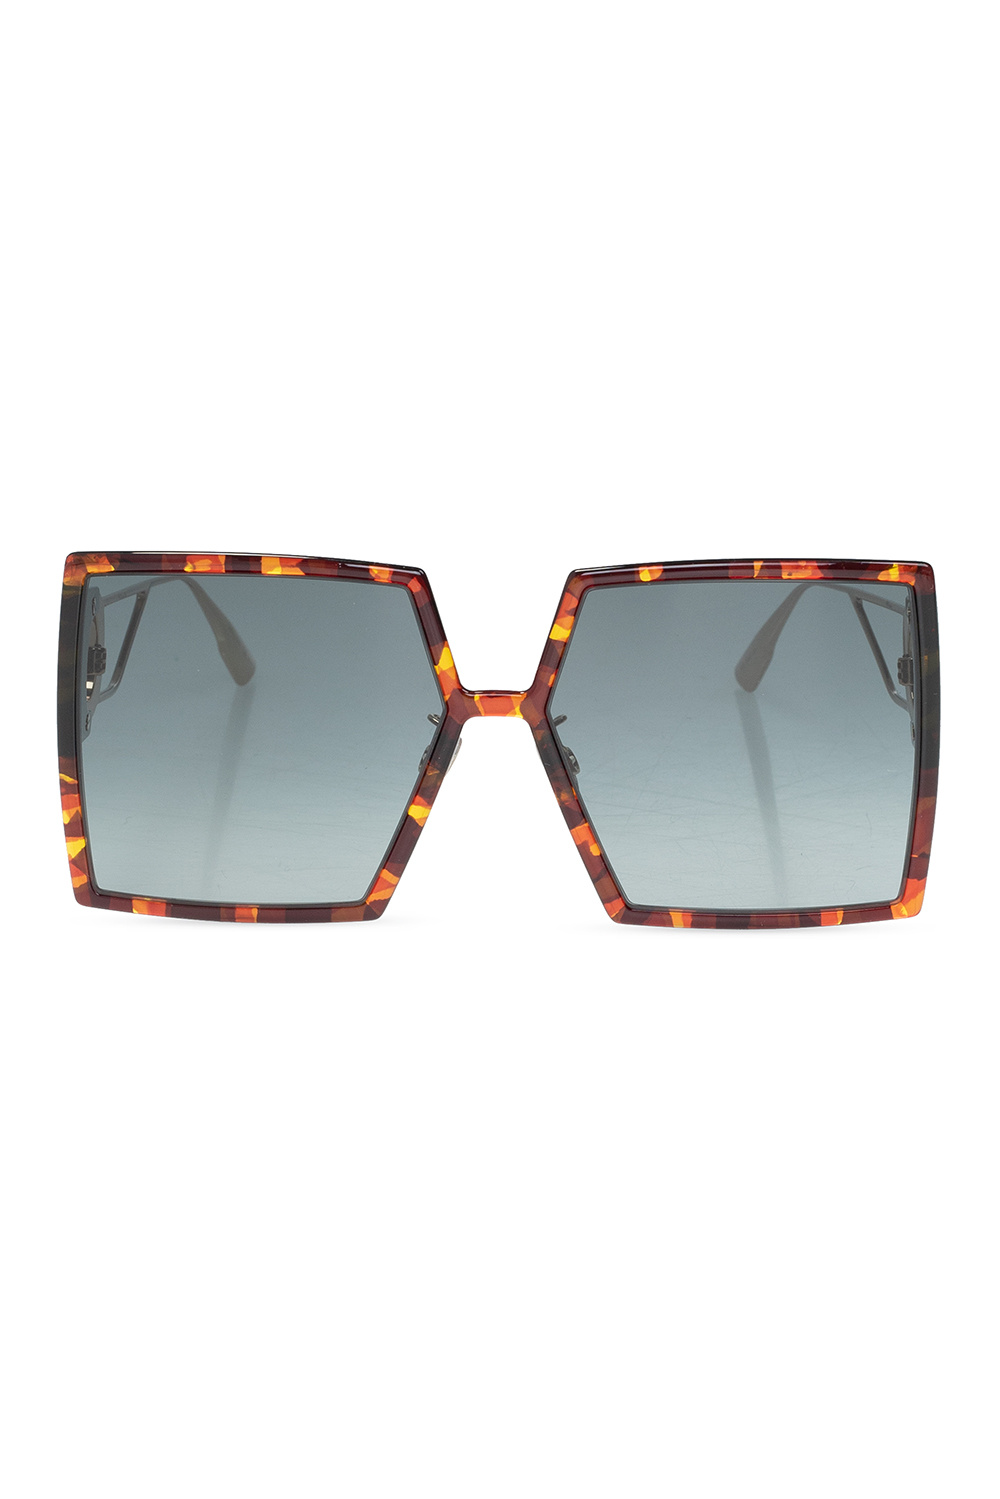 Dior ‘30Montaigne’ 1990s sunglasses